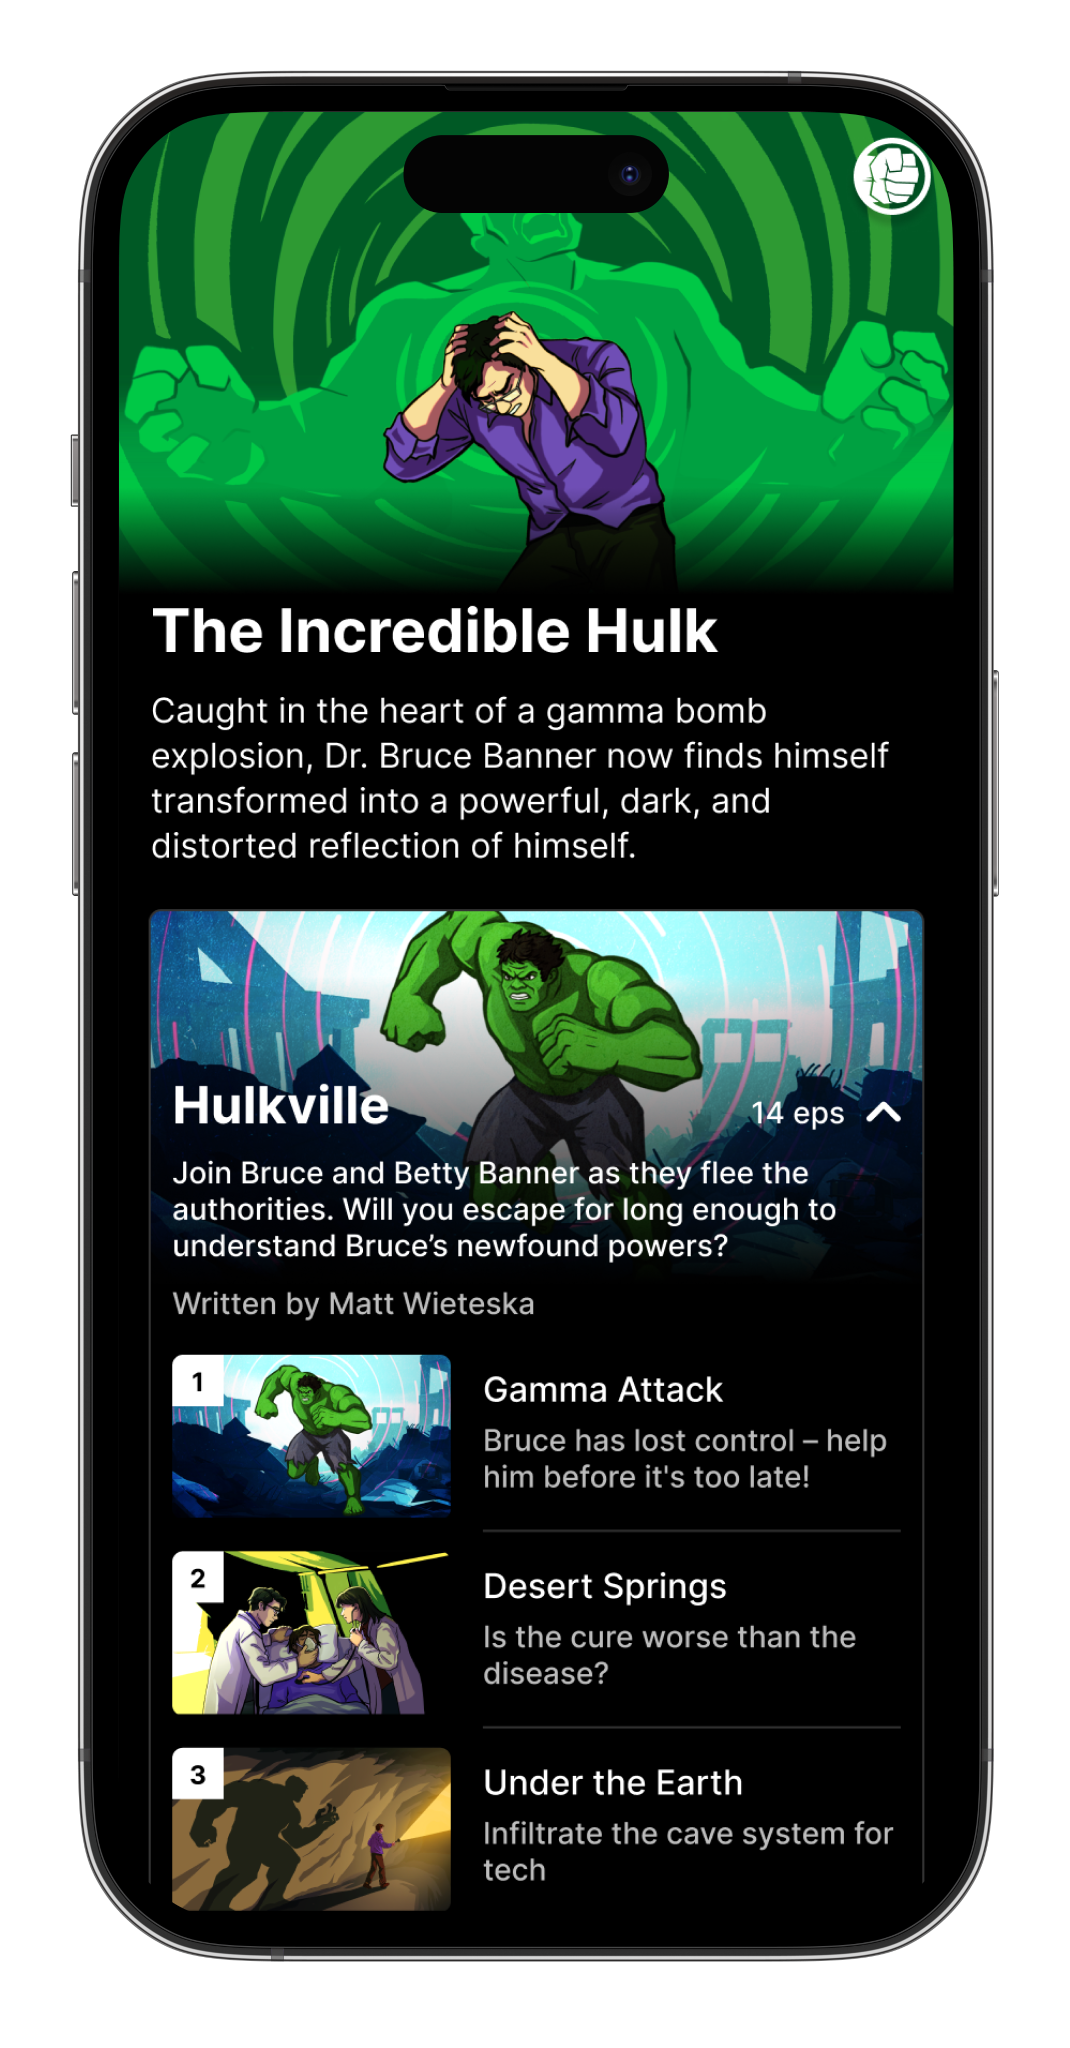 mobile art of hulkville series on Marvel move